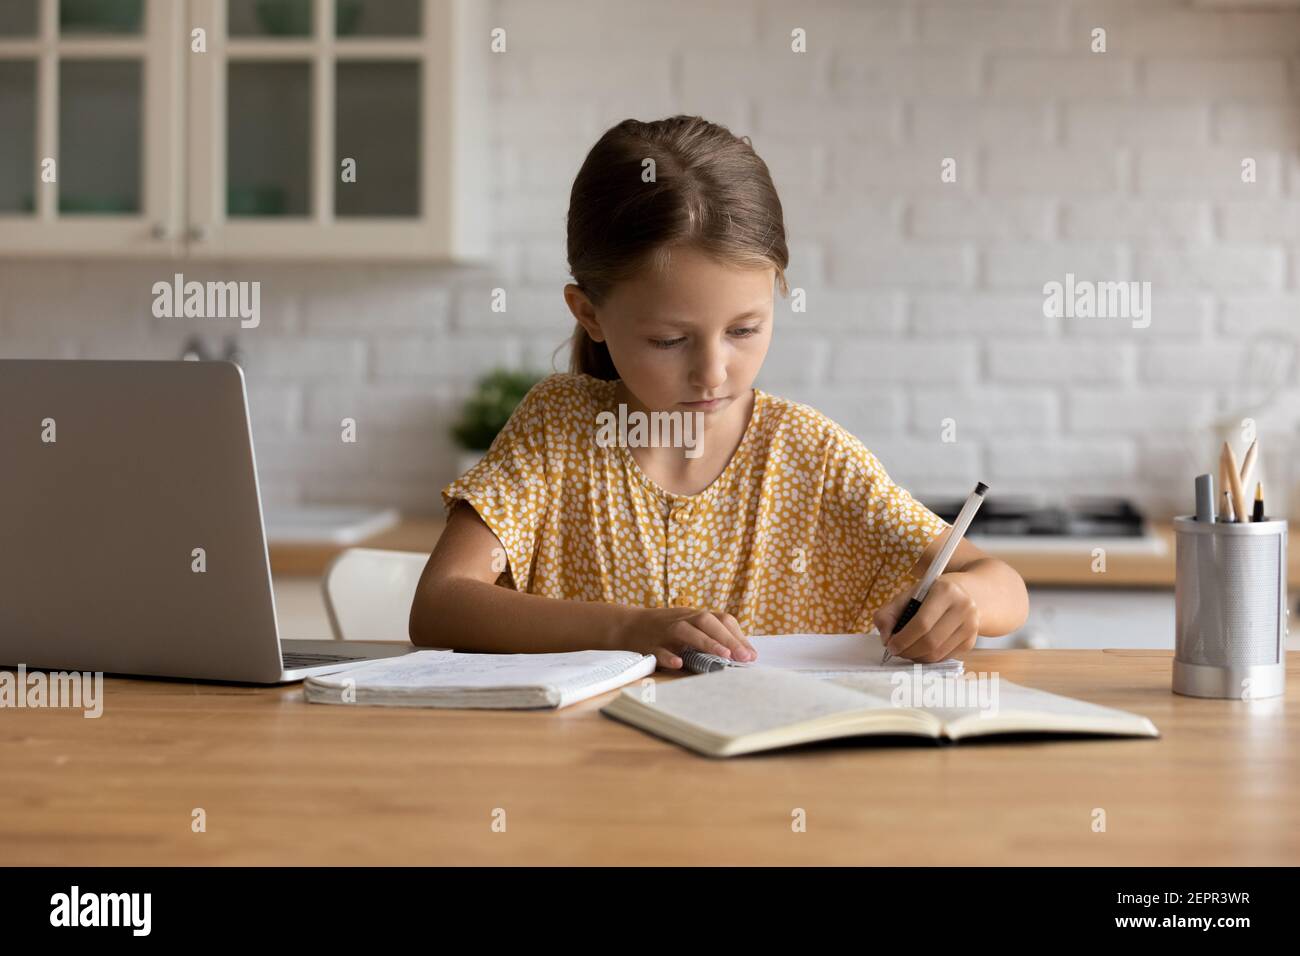 La niña enfocada se sienta en el escritorio tomando notas al copybook Foto de stock